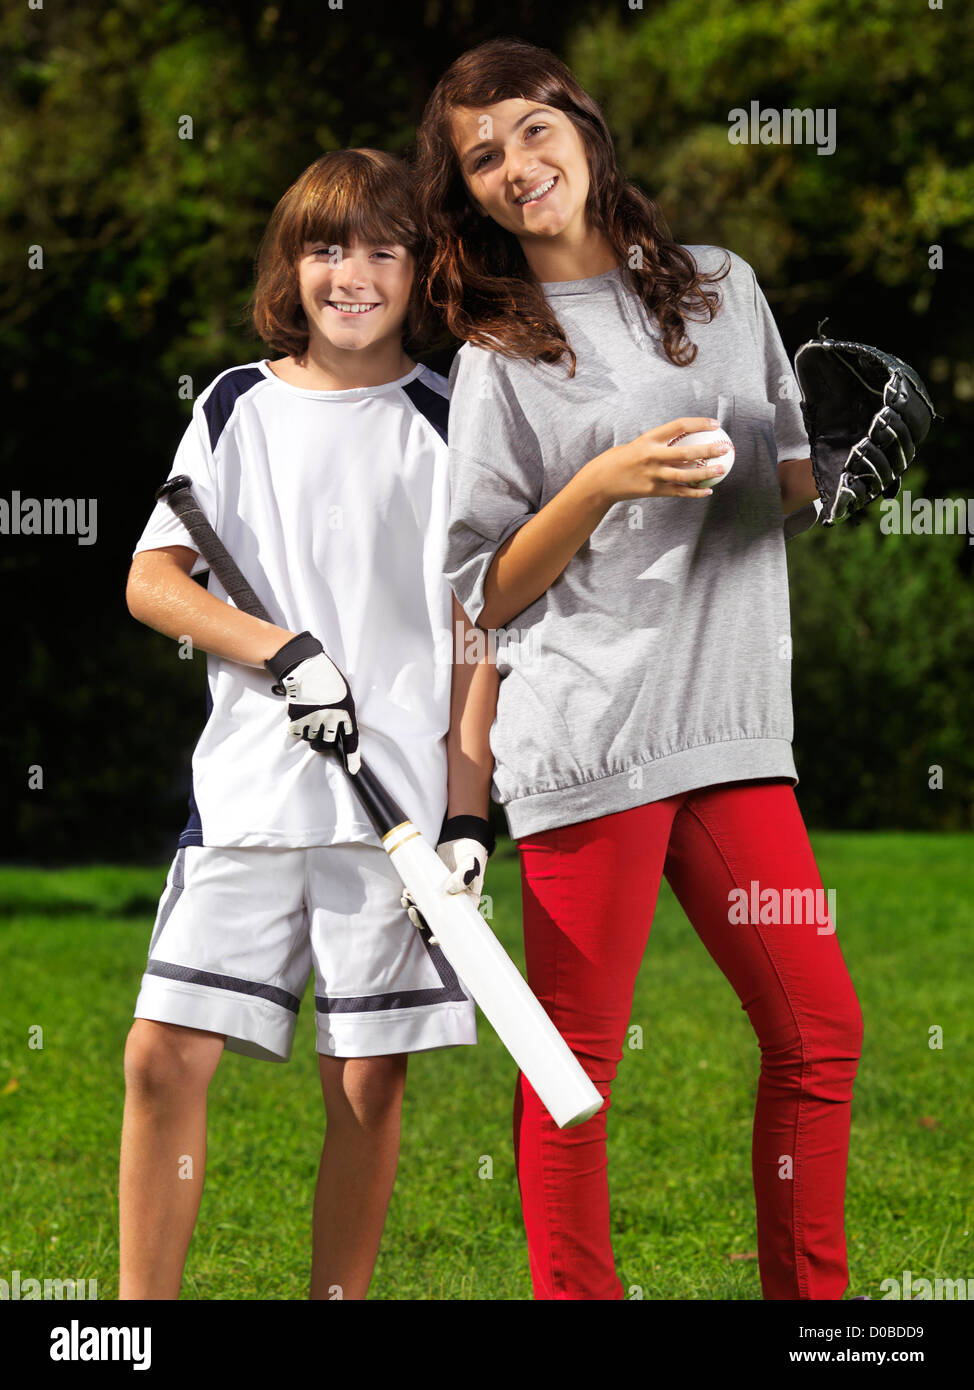 Portrait de deux happy smiling children, frère et soeur, 10 et 13, pratiquer le baseball, le style de vie en plein air de l'été actif. Banque D'Images